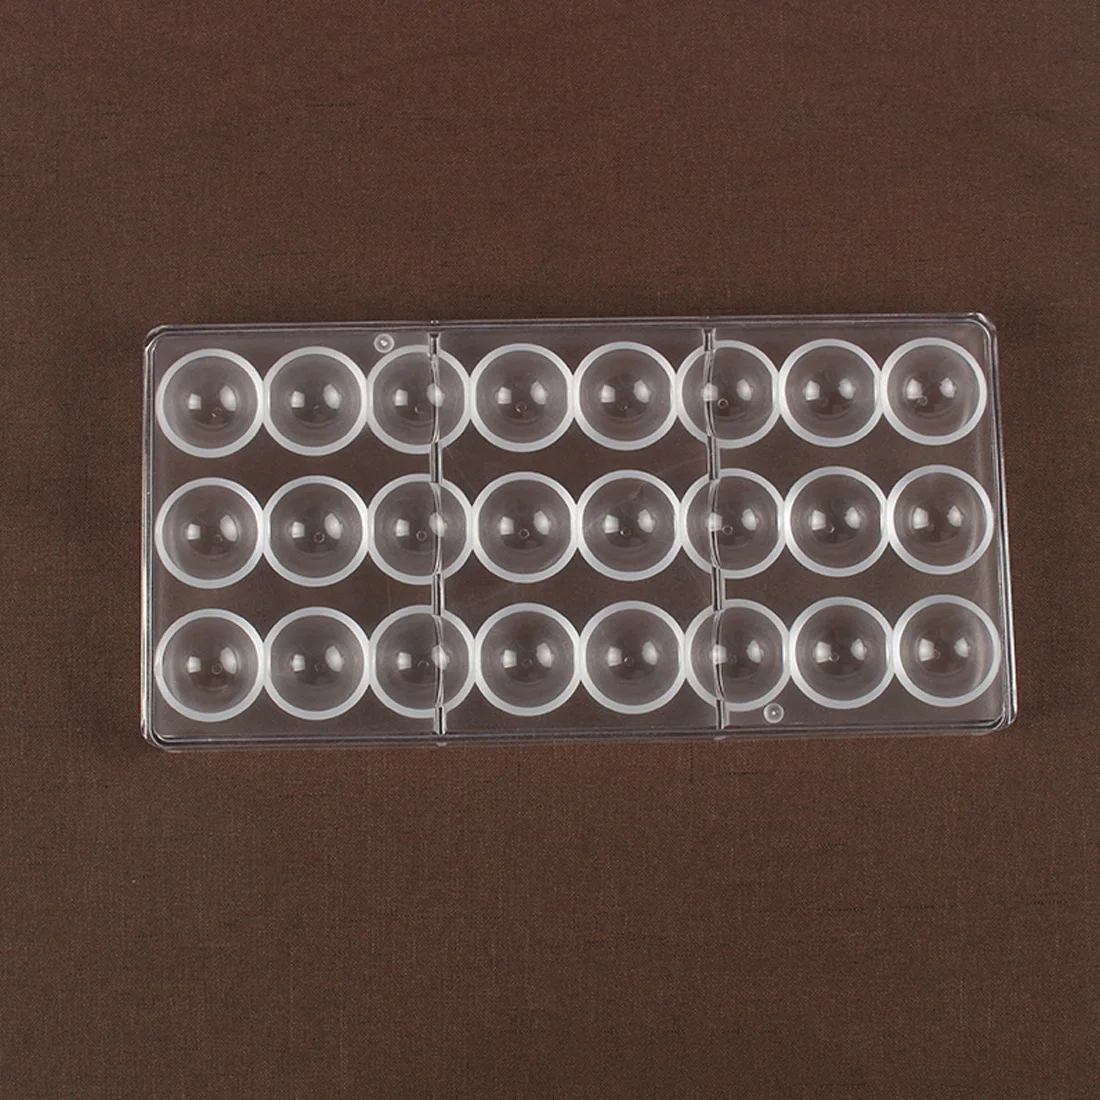 24 cavidades 3D Semi Esfera de cocina de Plástico de Chocolate en Forma de Bola de Policarbonato DIY Moldes de Pastelería Herramientas 4